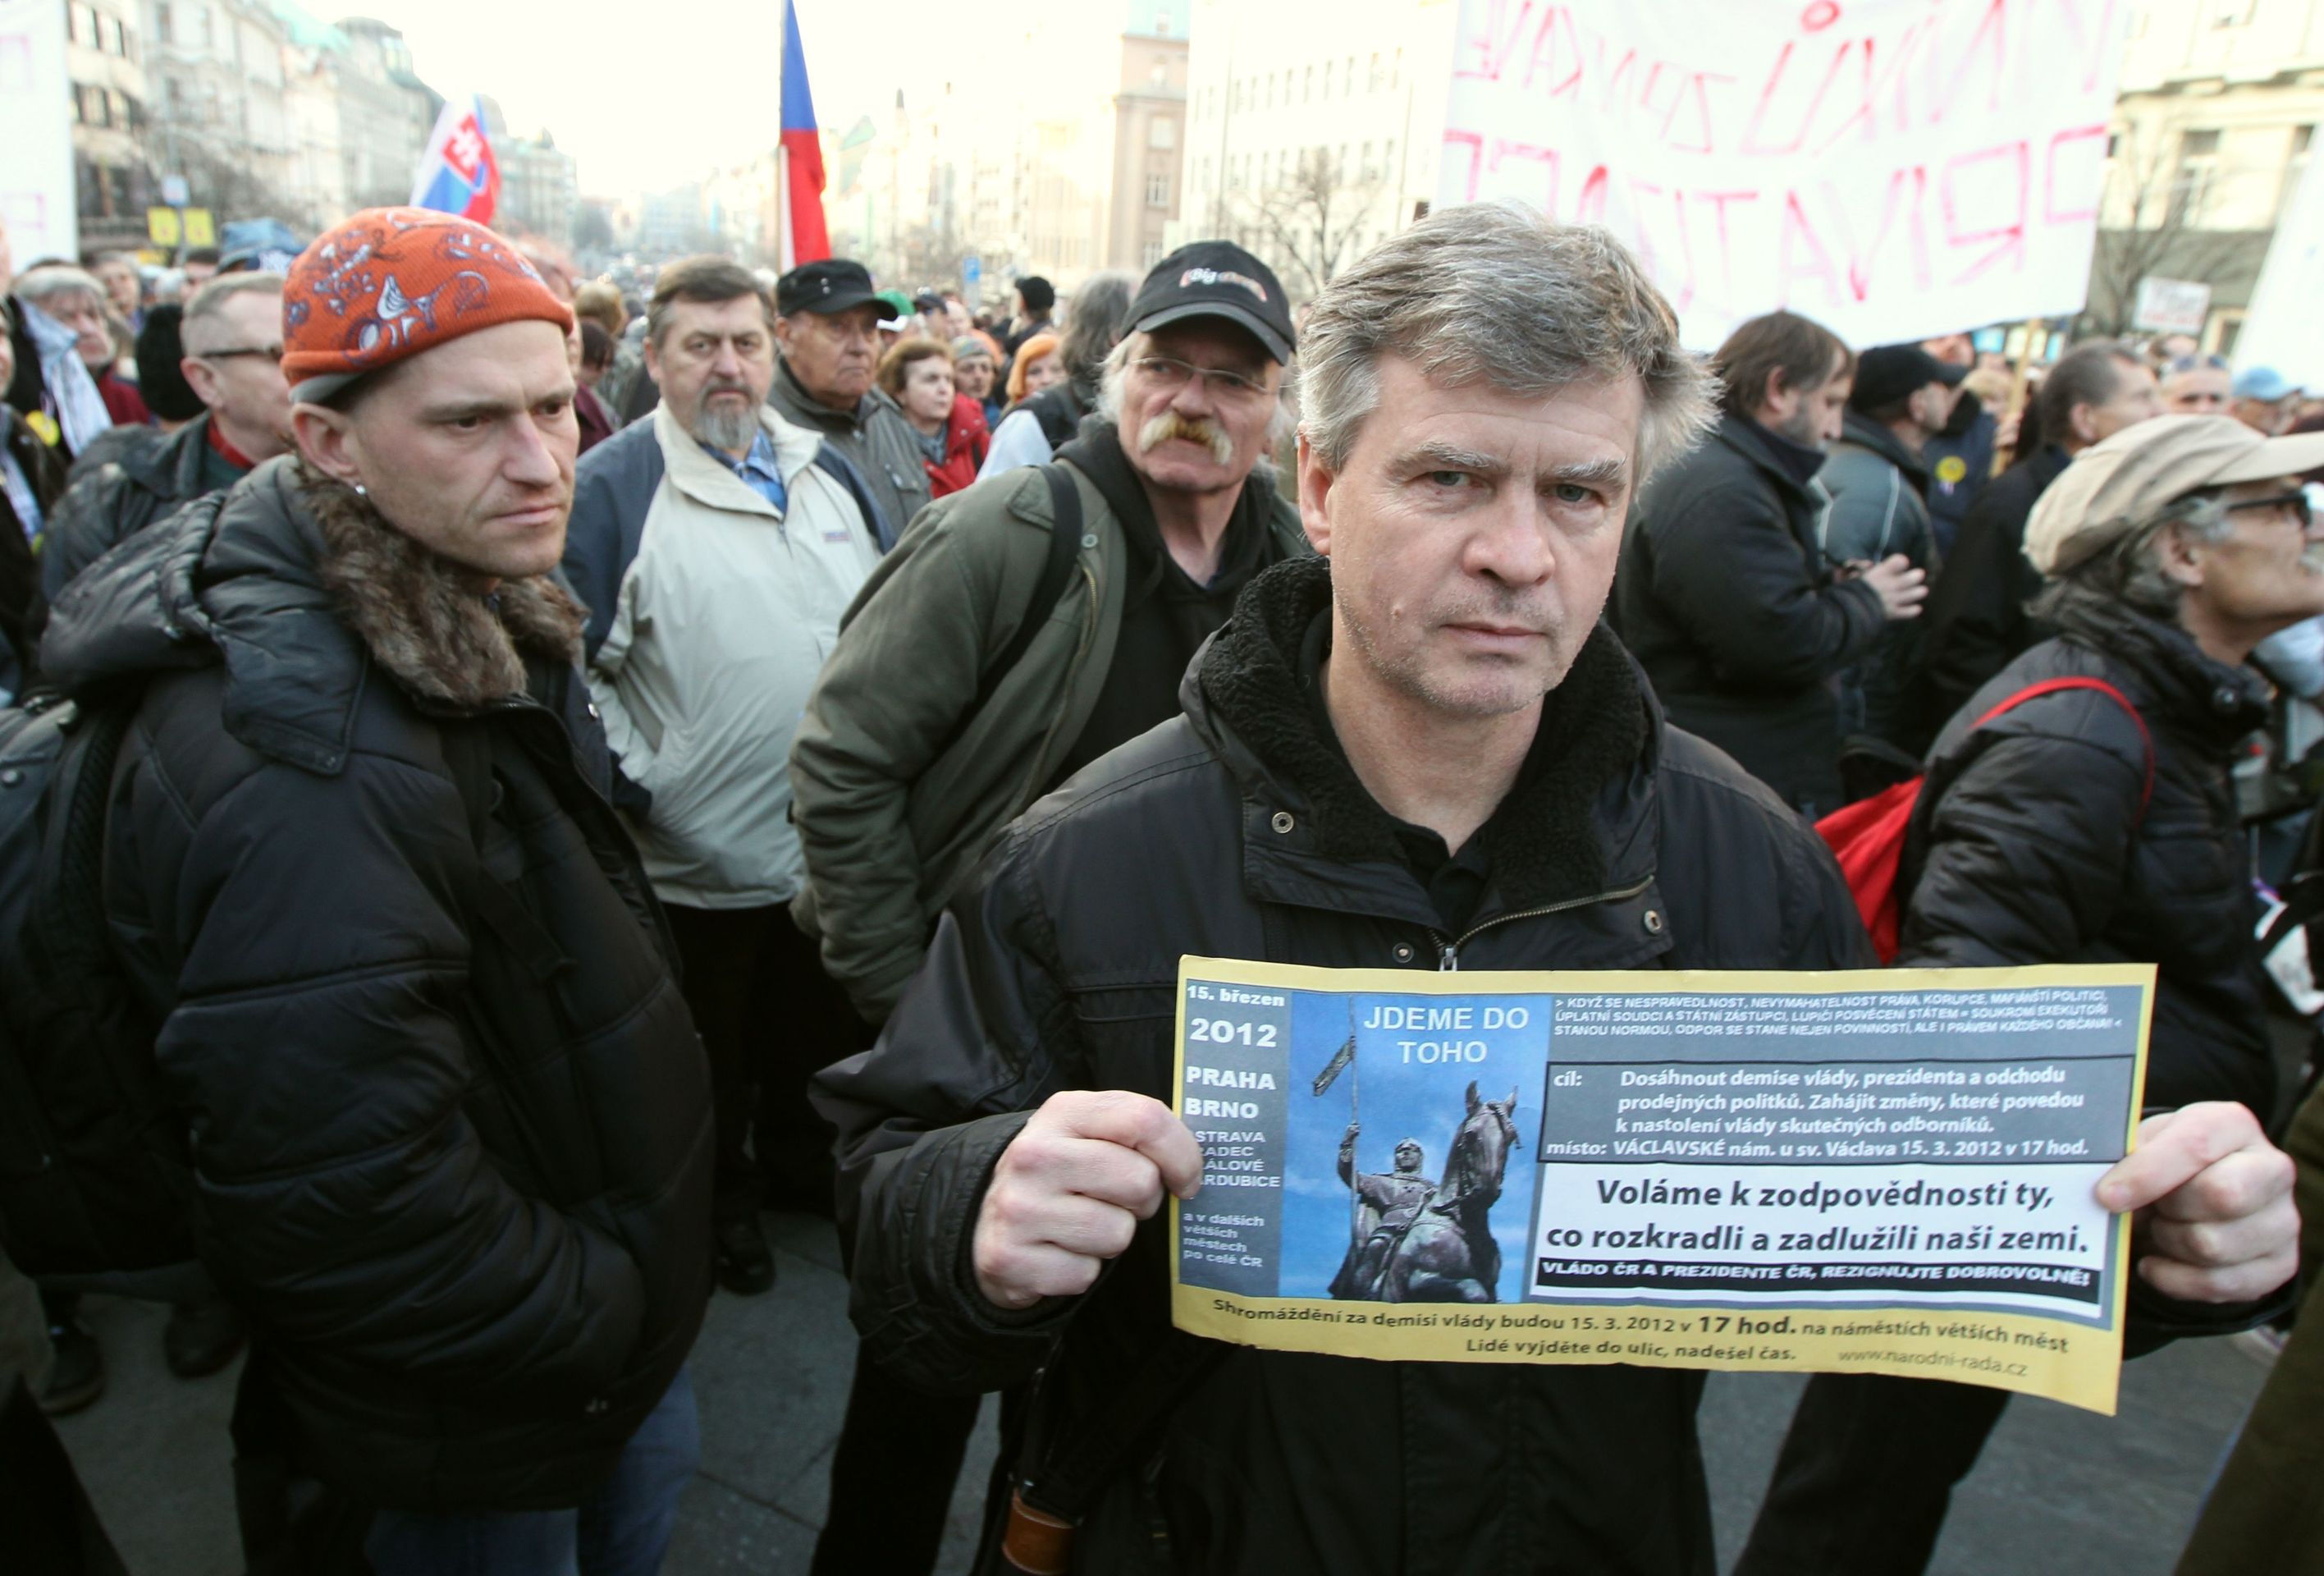 Lidé demonstrují proti vládě ČR a prezidentovi - 11 - Lidé protestují proti vládě Petra Nečase a prezidentu Klausovi (11/15)